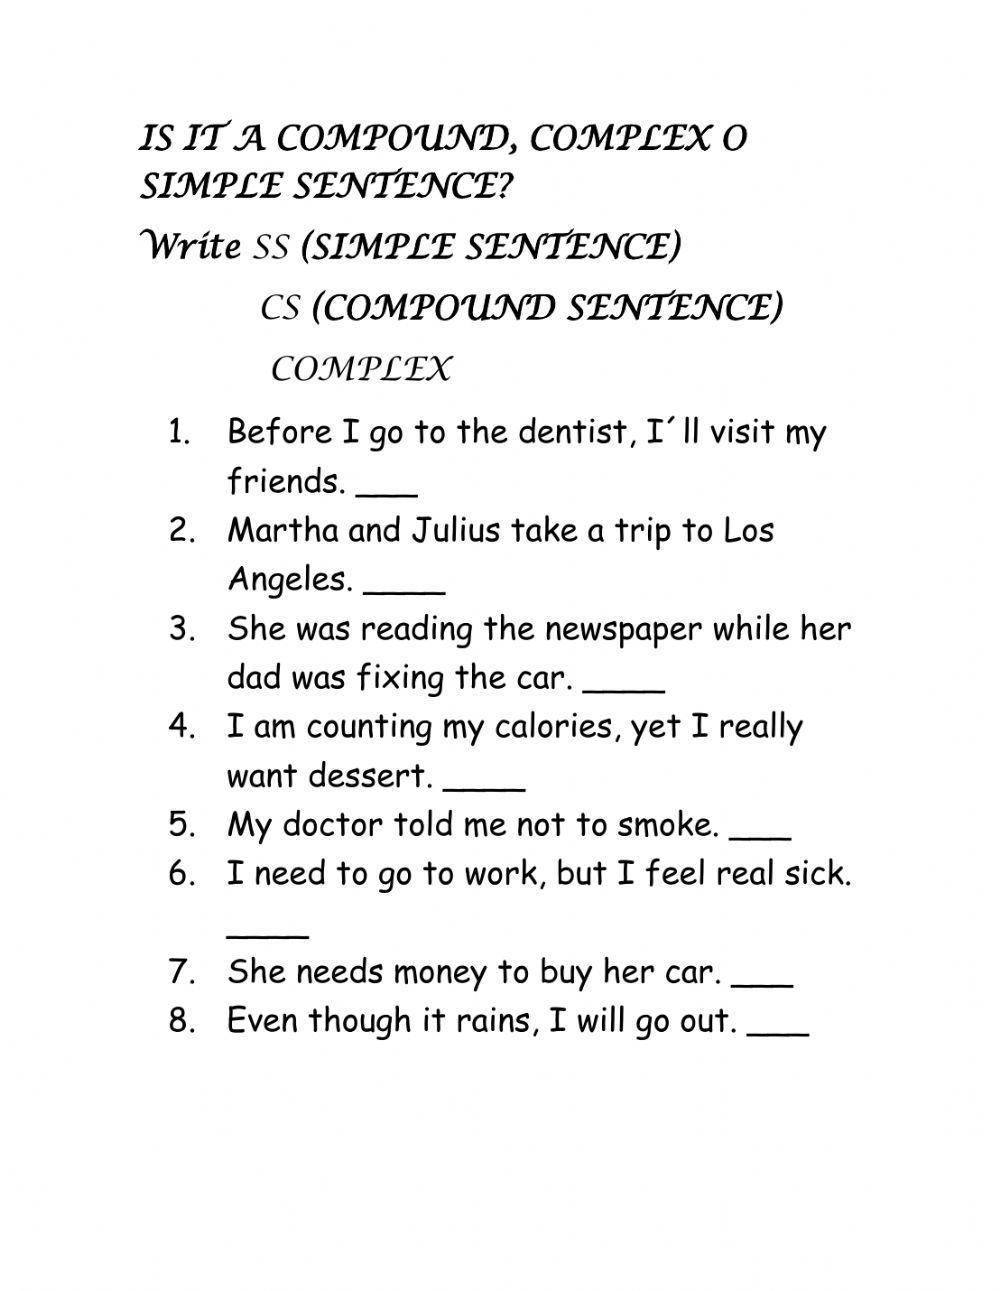 Complex compound and simple sentences